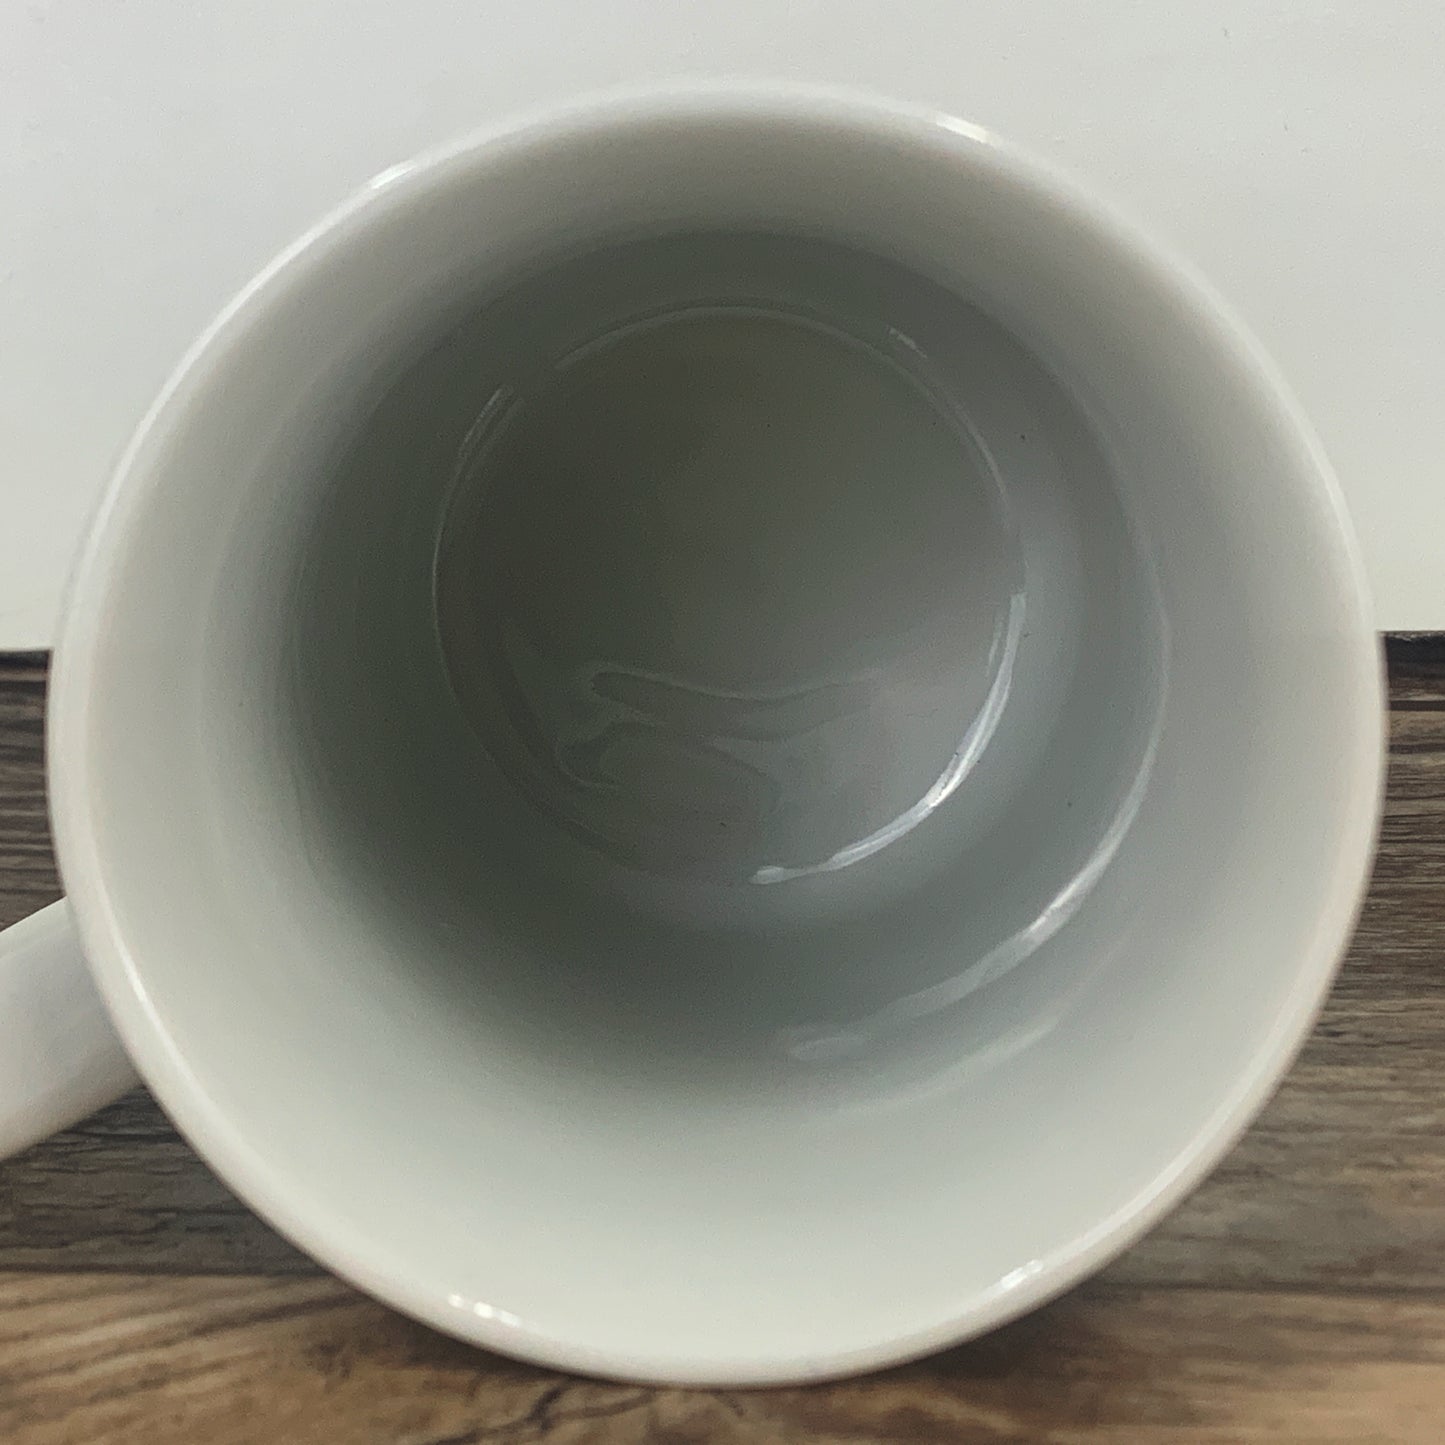 Kinka Enesco Japan Coffee Mug "Wishing you joy, happiness and a lifetime of love"